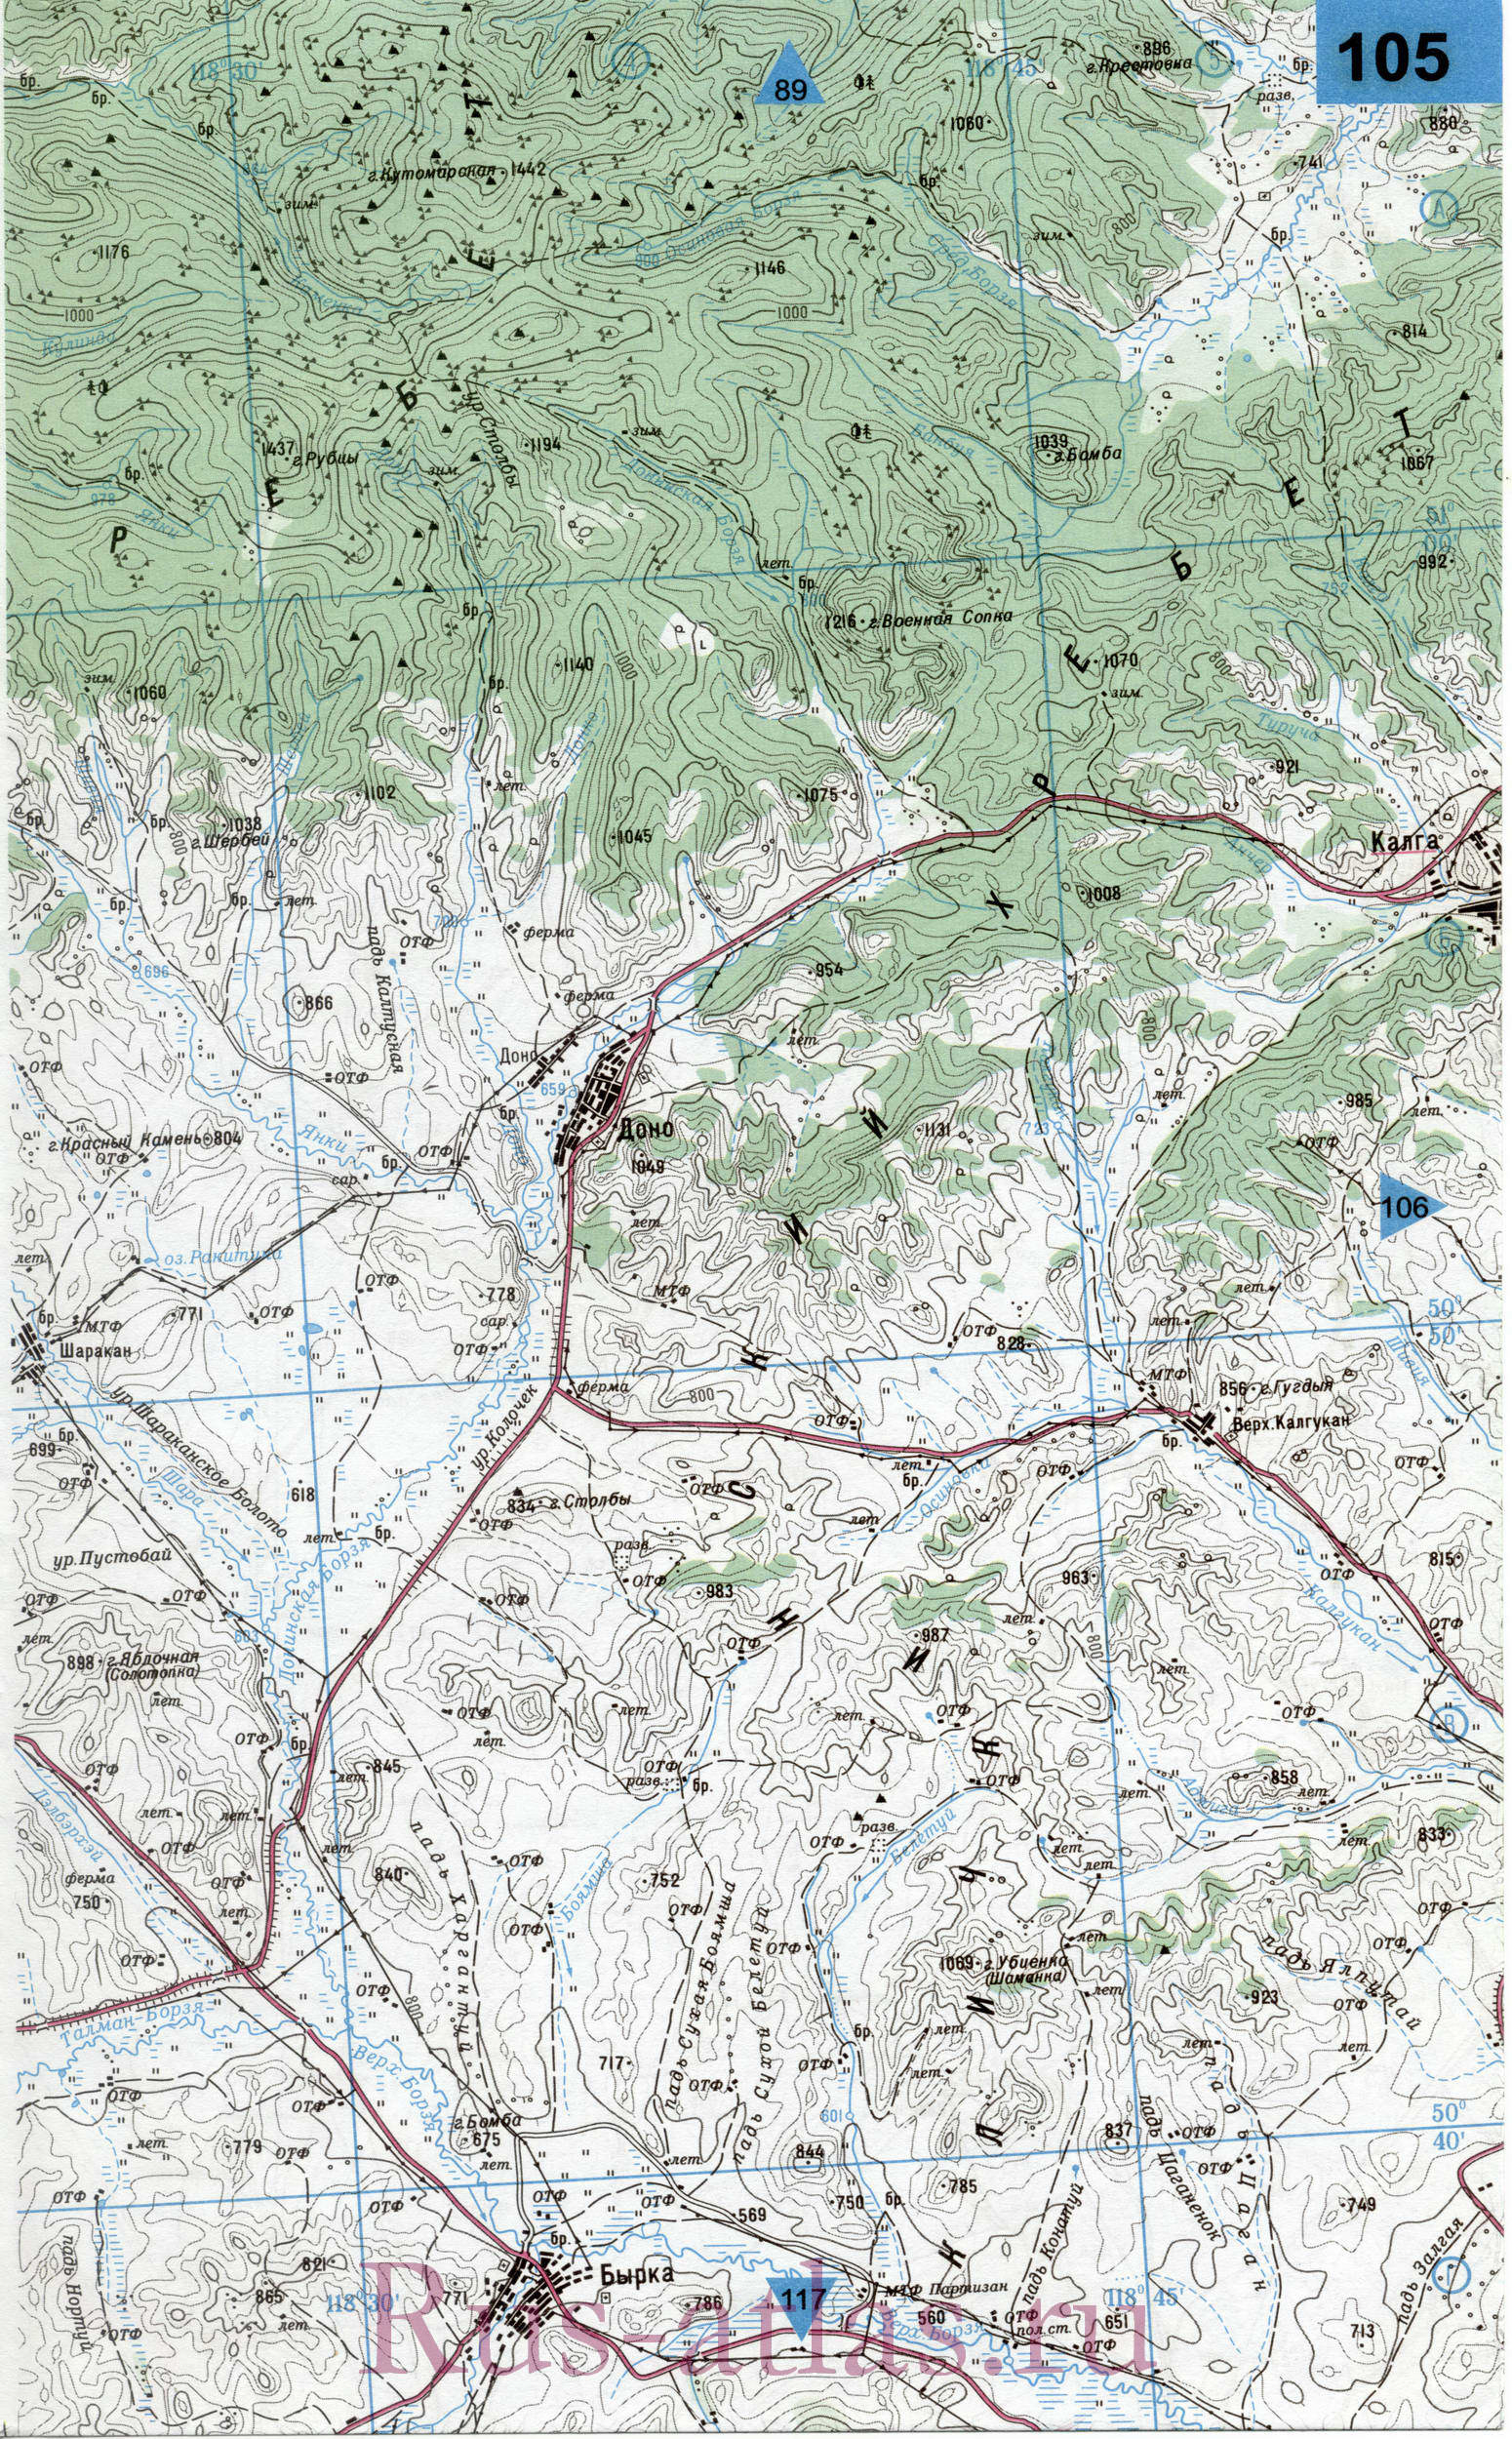 Калганский район Читинской области - карта топографическая масштаба 1см:2км, A0 - 